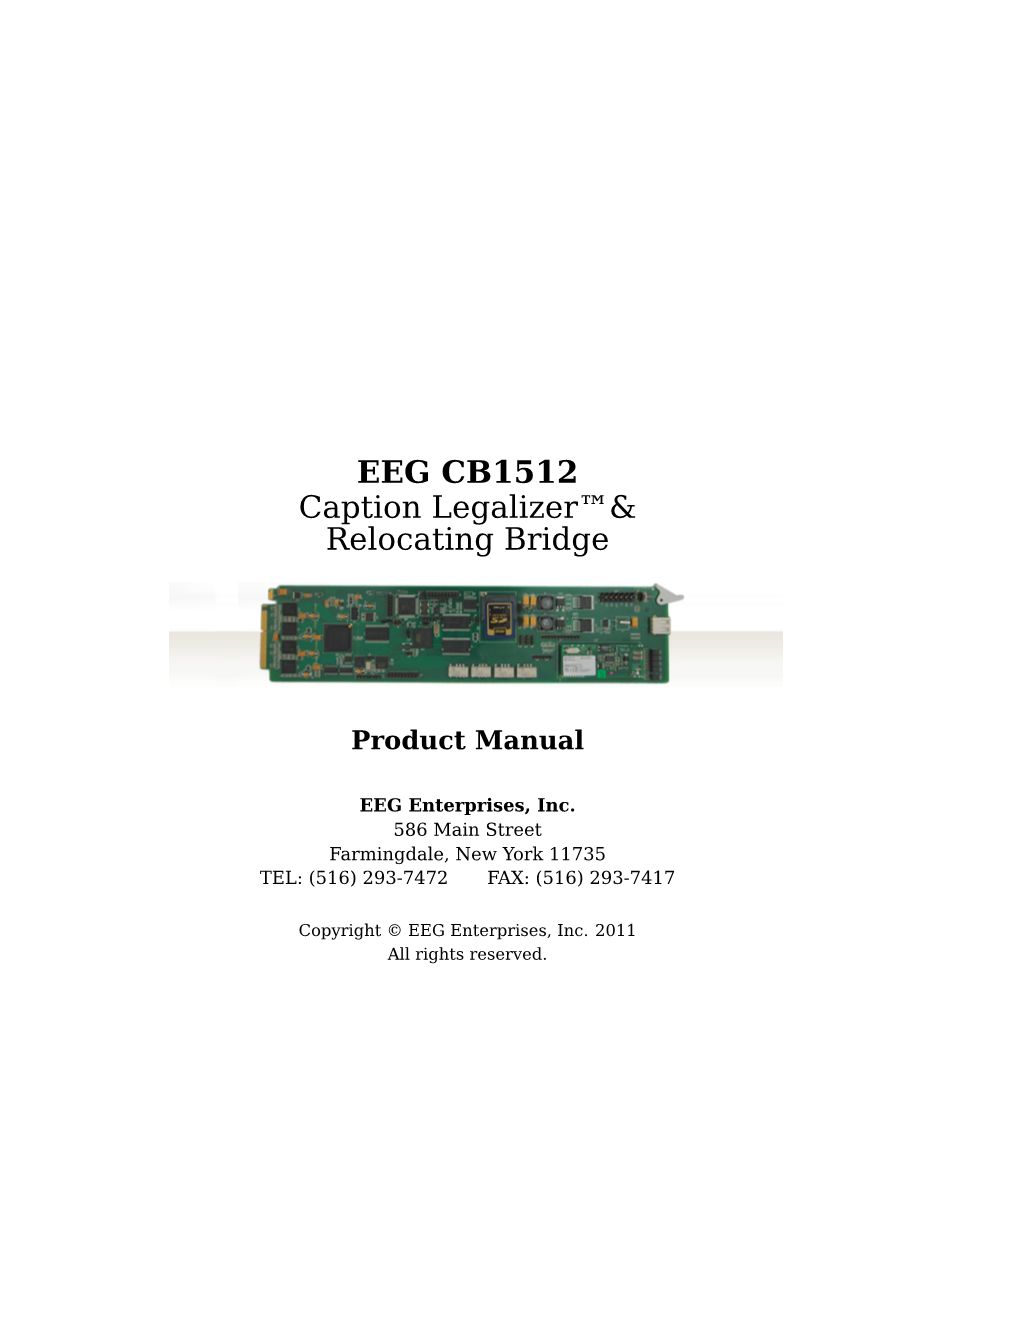 EEG CB1512 Caption Legalizer™& Relocating Bridge